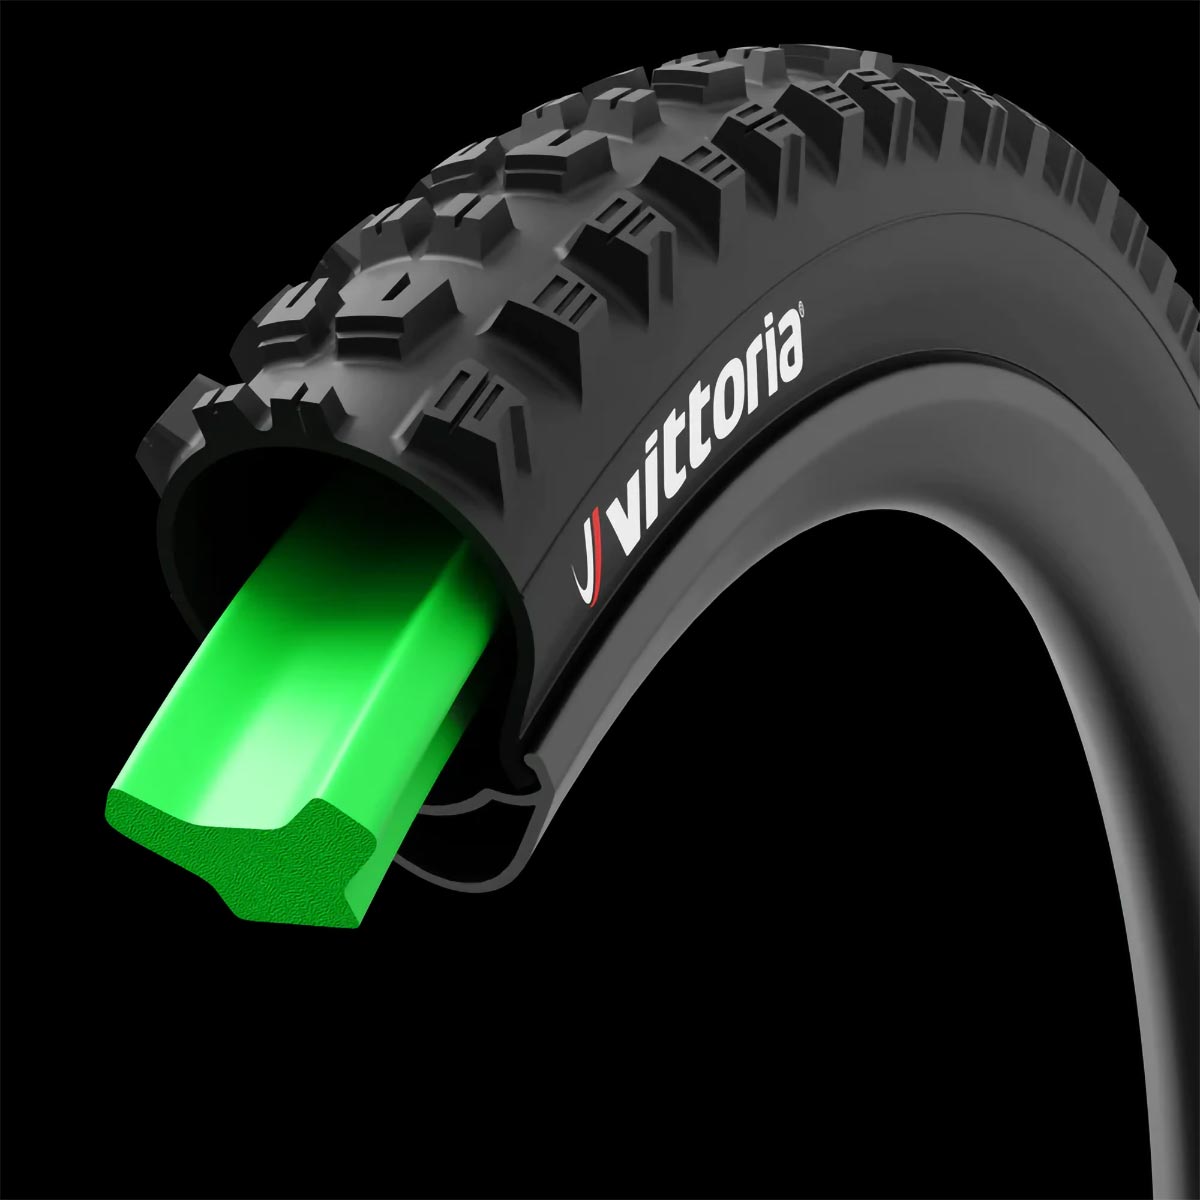 Vittoria Air-Liner Protect, una nueva gama de insertos optimizados para las modalidades más extremas del Mountain Bike